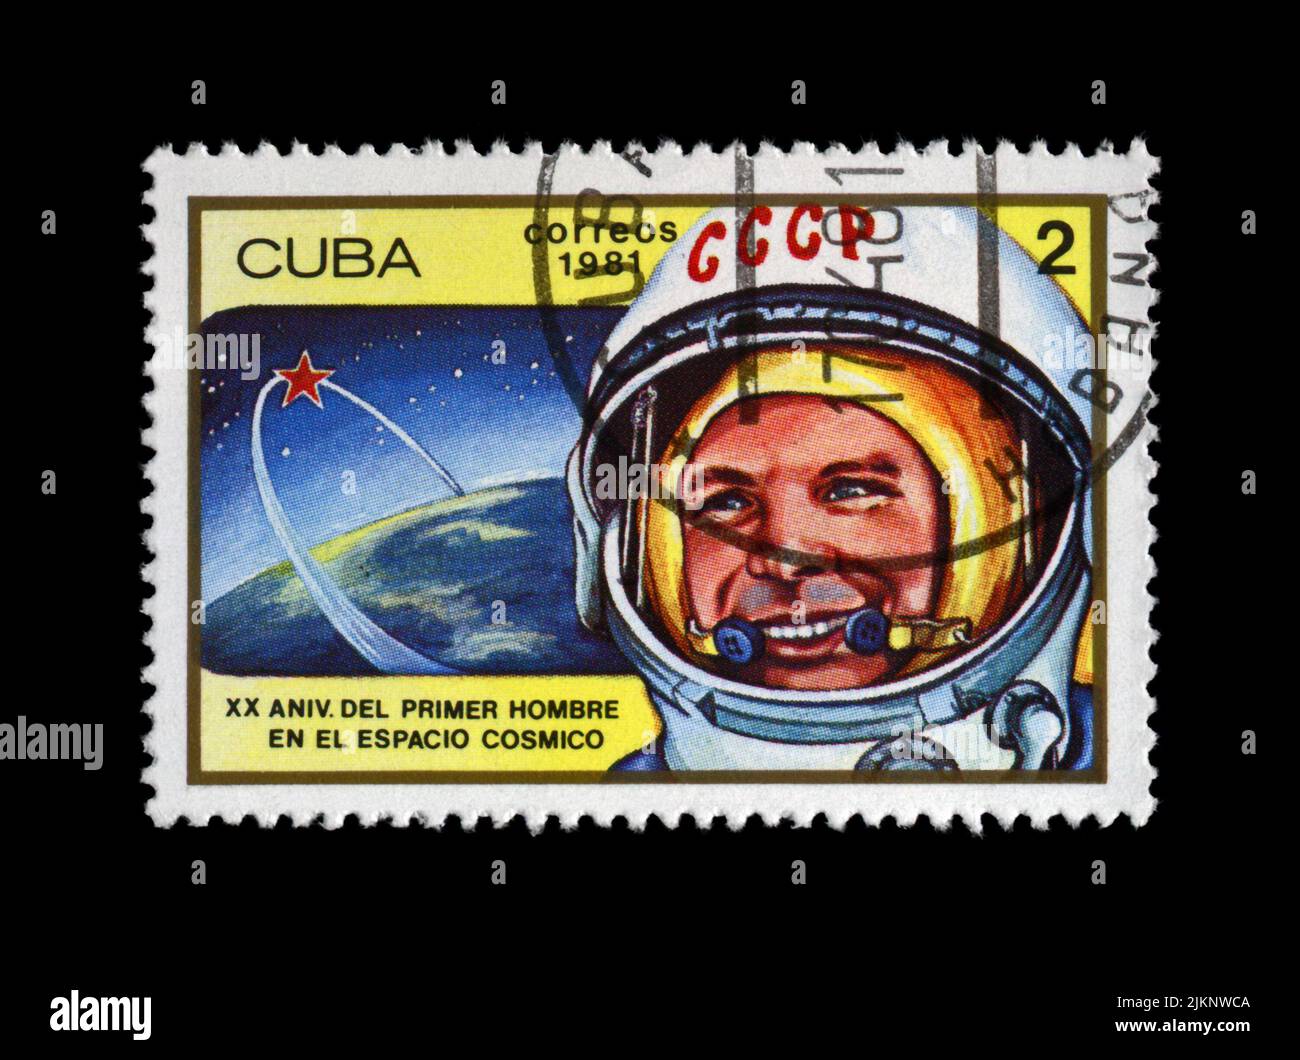 Yury Gagarin, erster russischer, sowjetischer Raumfahrer-Shuttle-Orbit, um 1981. Vintage Post-Stempel isoliert auf schwarzem Hintergrund. Stockfoto